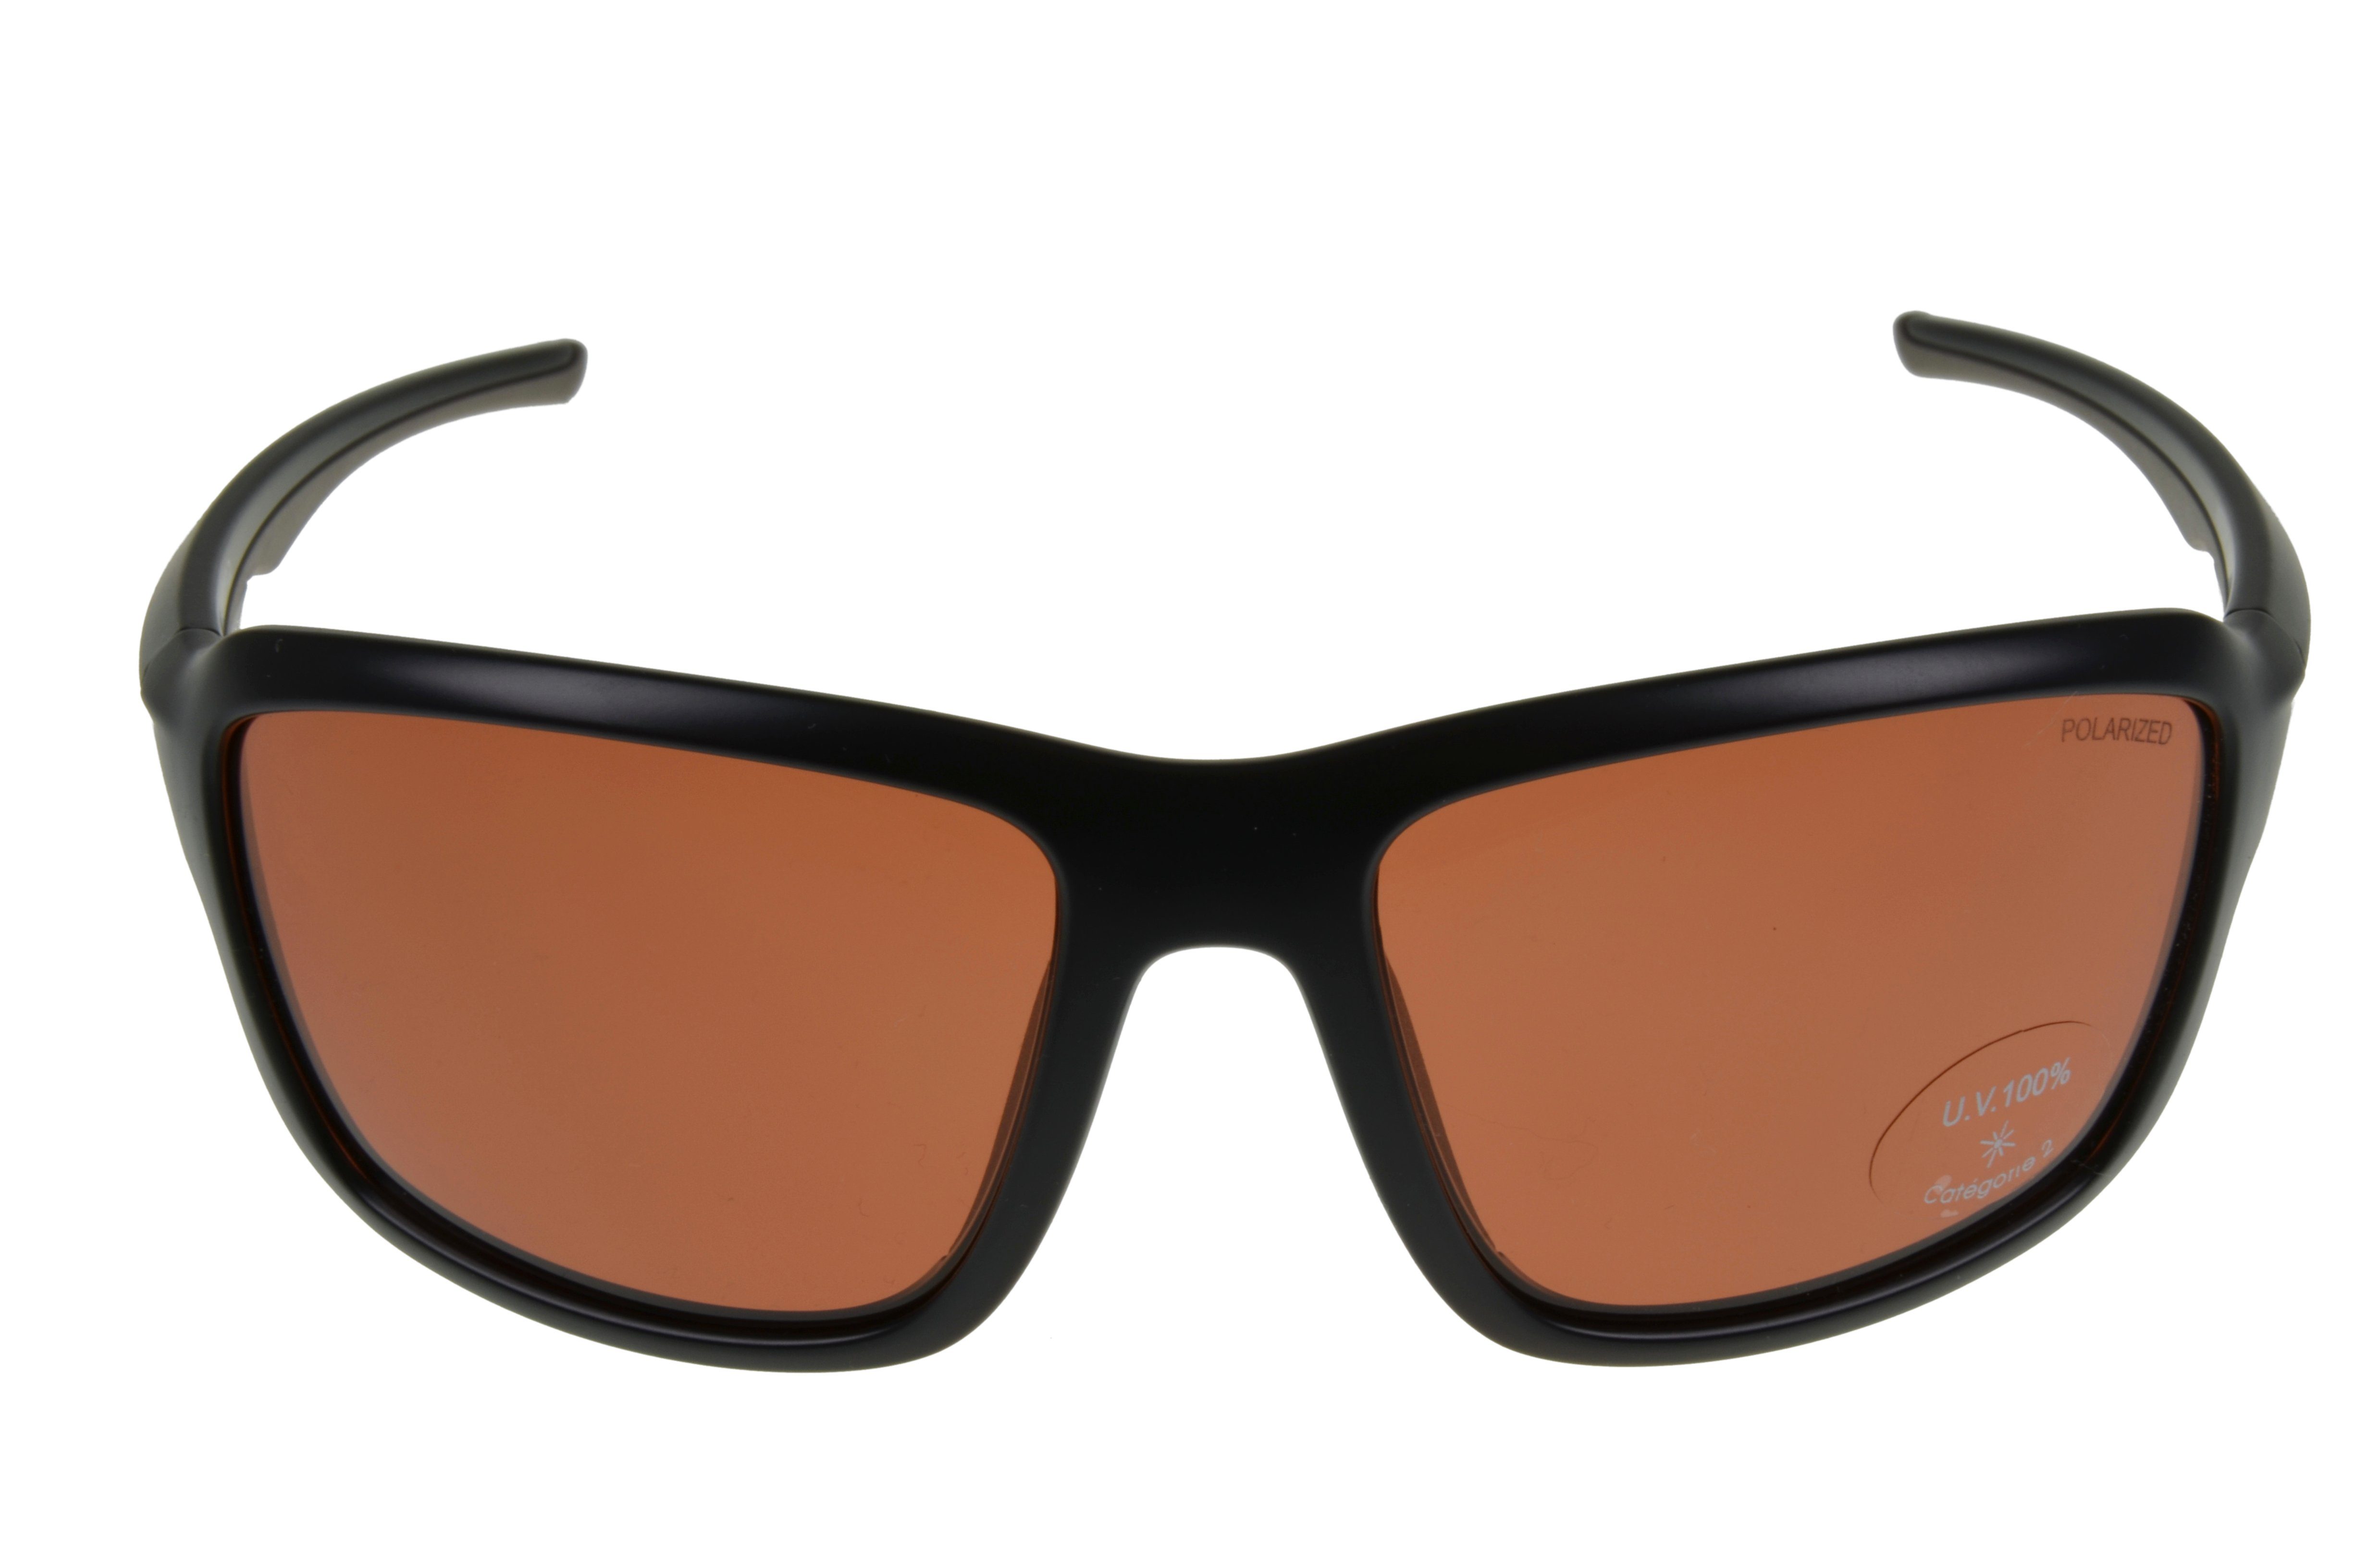 Gamswild Sportbrille WS7536 Sonnenbrille Skibrille cat.2 & polarisiert TR90 Damen Fahrradbrille schwarz-braun Herren Unisex